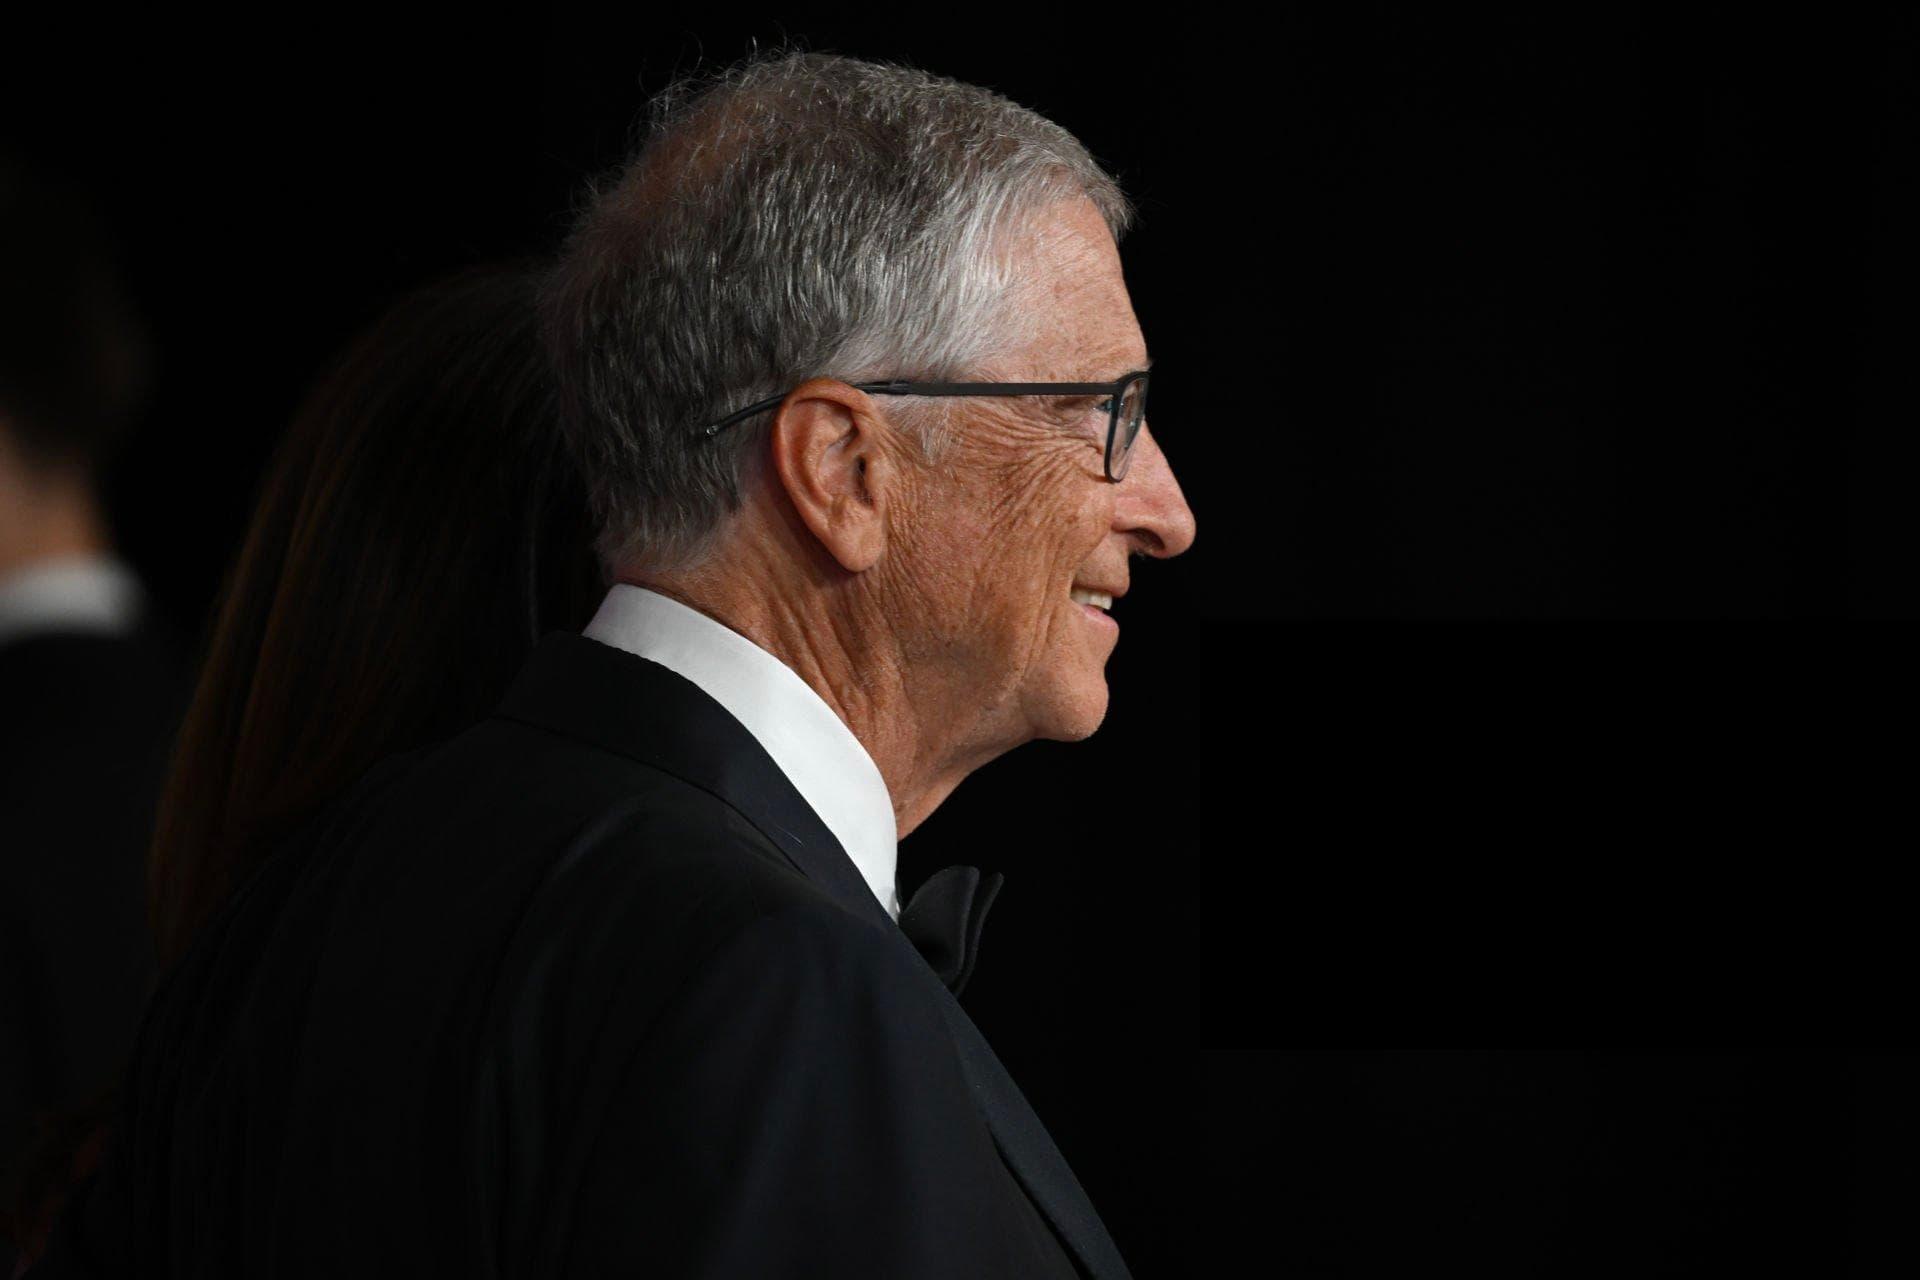 بیل گیتس / Bill Gates نیم رخ لباس مشکی